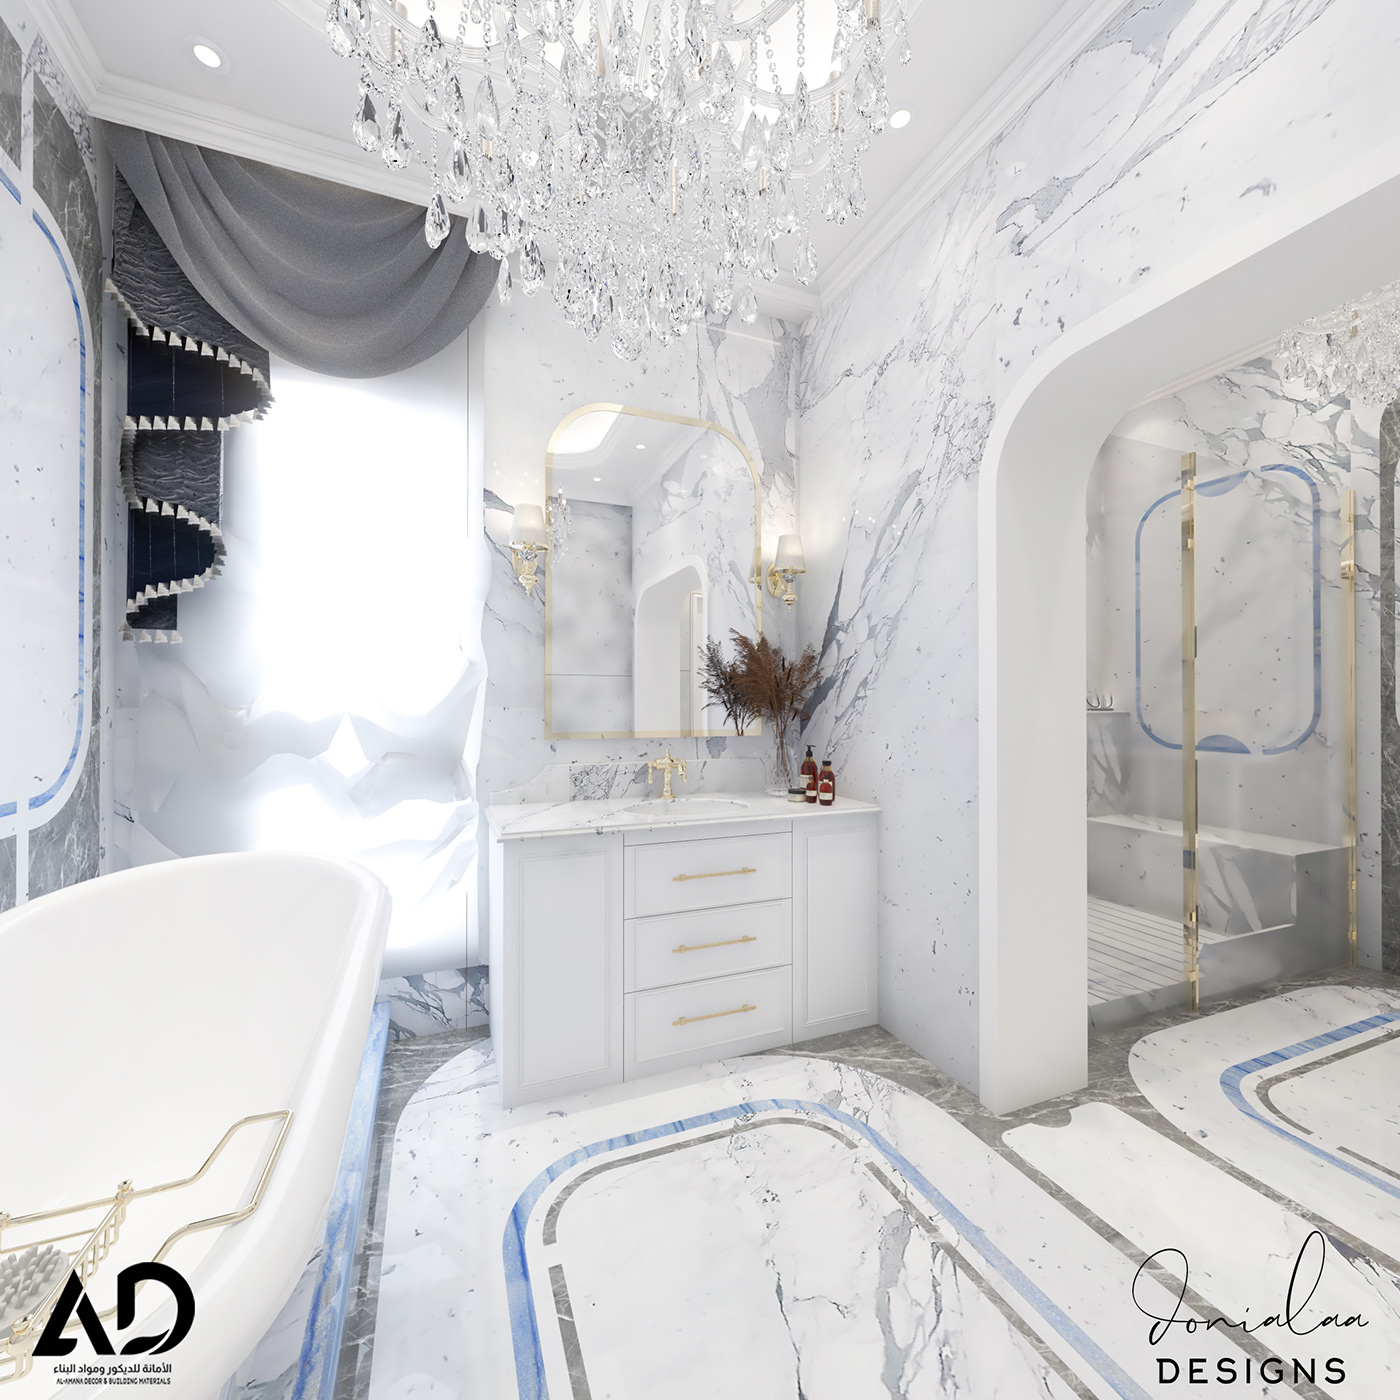 blueandgrey classic Bathroom clean elegant gold Interior luxury professional Unique waterjet